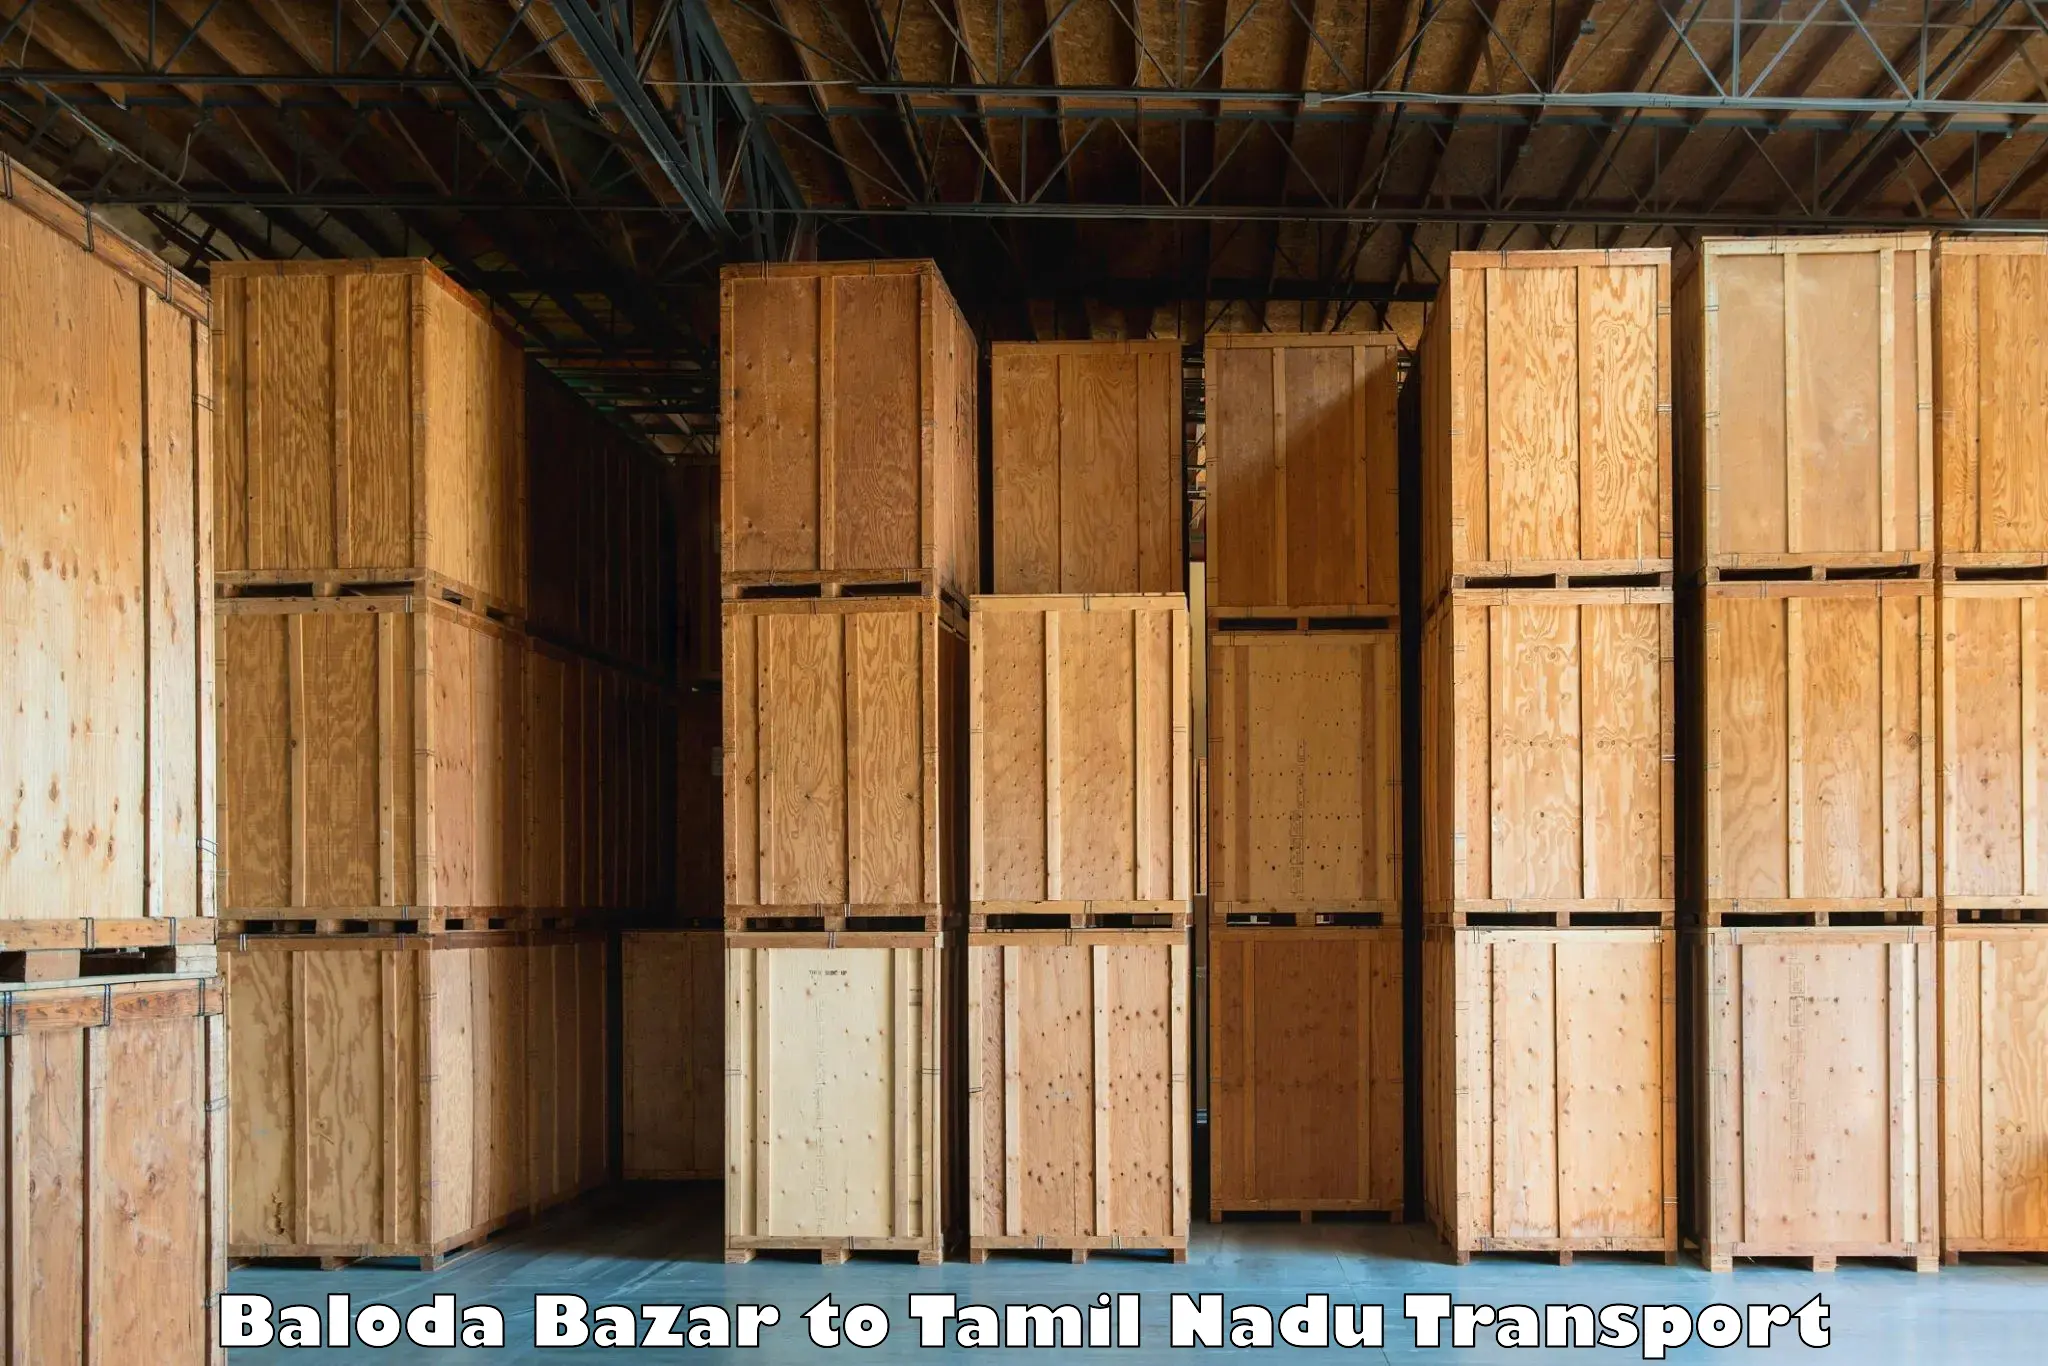 Interstate transport services Baloda Bazar to Lalpet